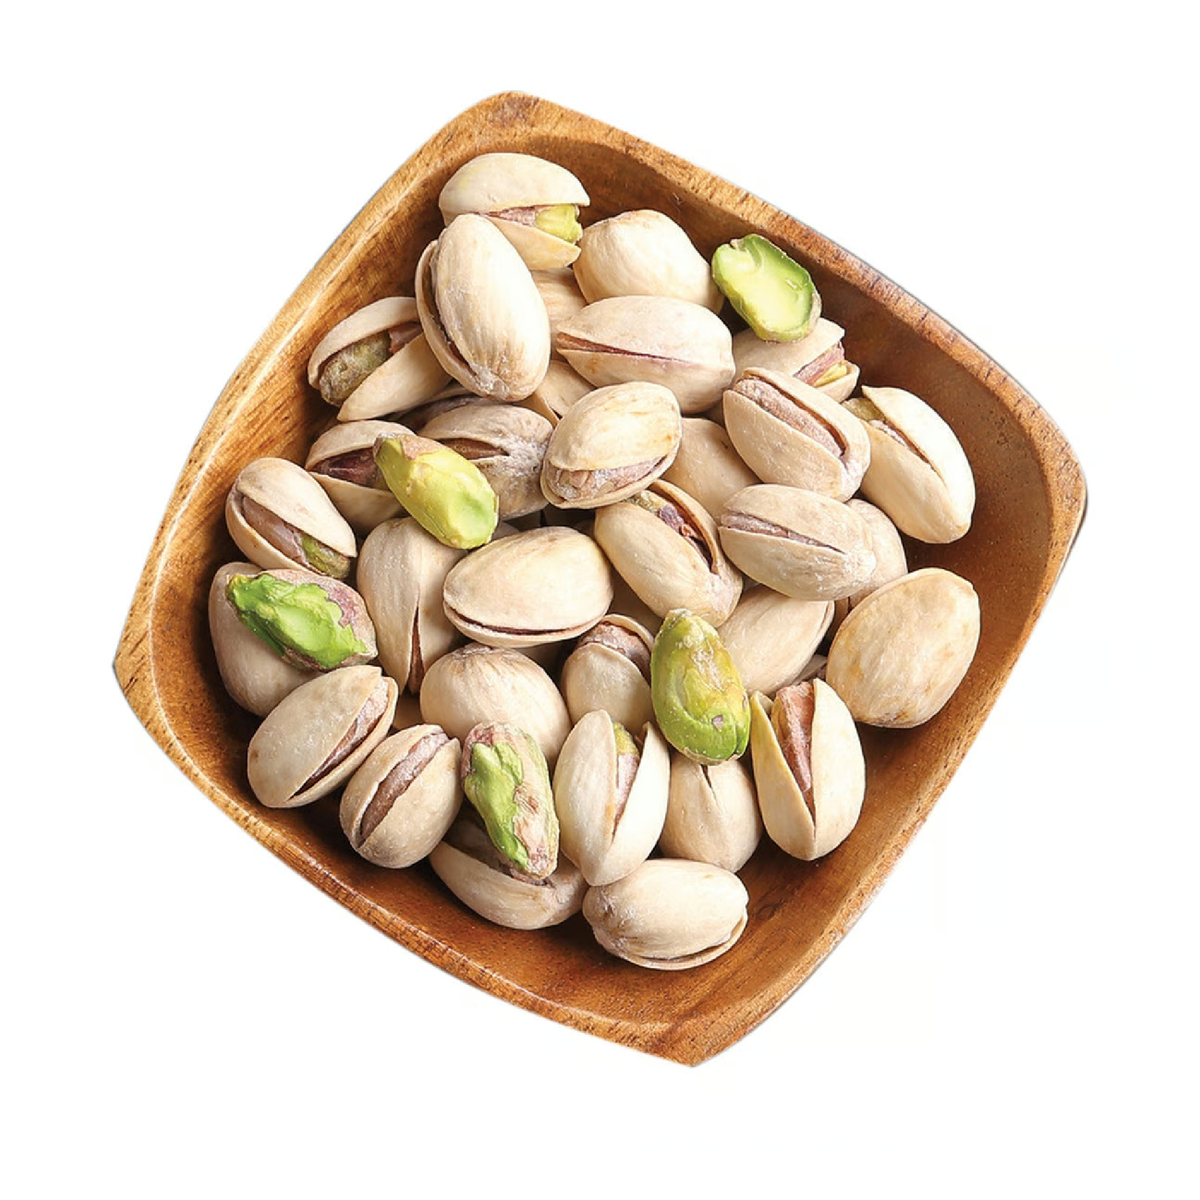 اشتري قم بشراء فستق محمص مملح أمريكي 500 جم Online at Best Price من الموقع - من لولو هايبر ماركت Roastery Nuts في الامارات